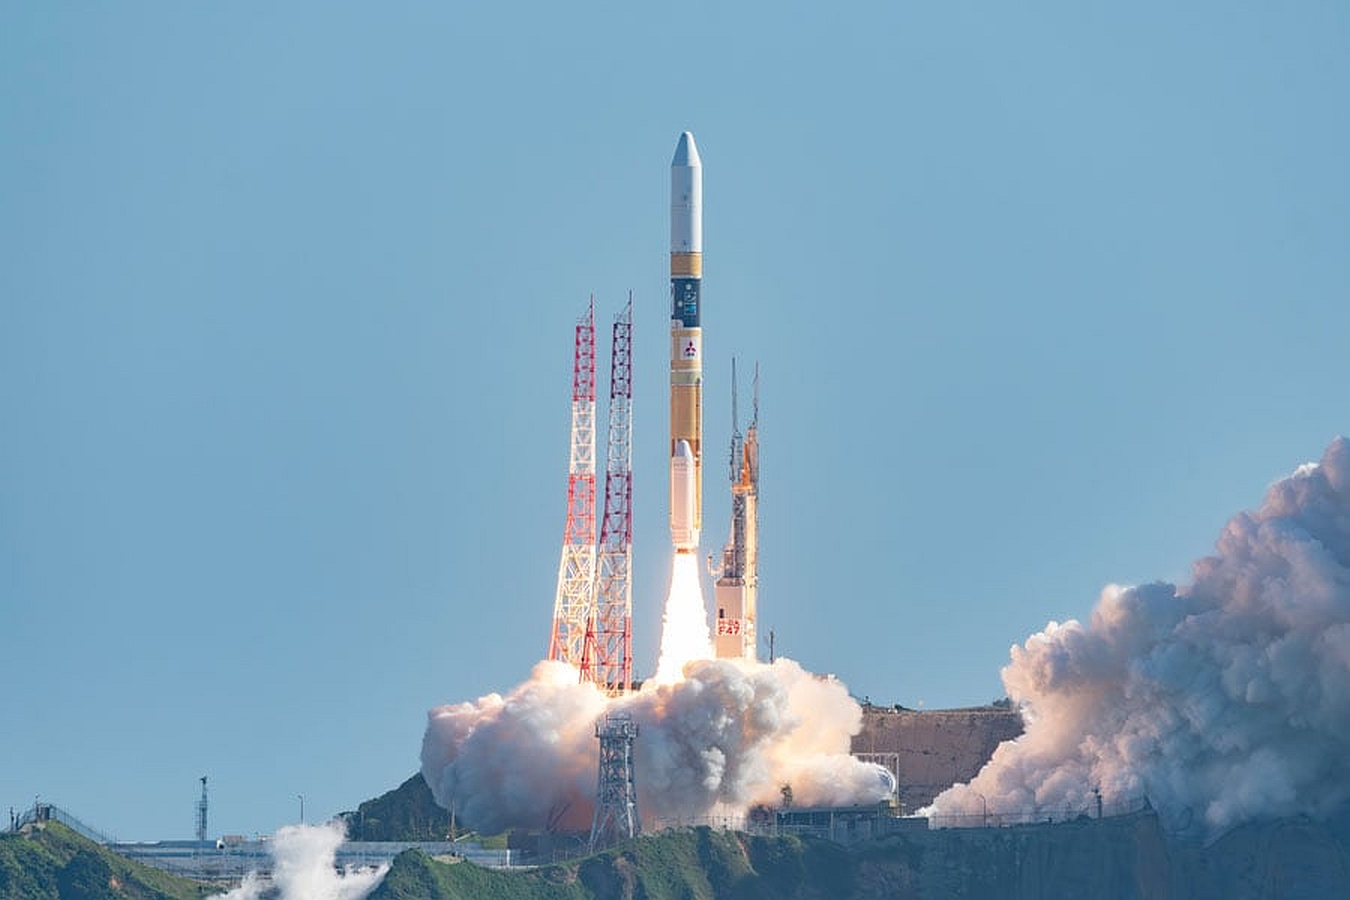 اليابان تطلق صاروخا من طراز (إتش-2 إيه) يحمل قمرا صناعيا فلكيا للهبوط على القمر7-9-2023